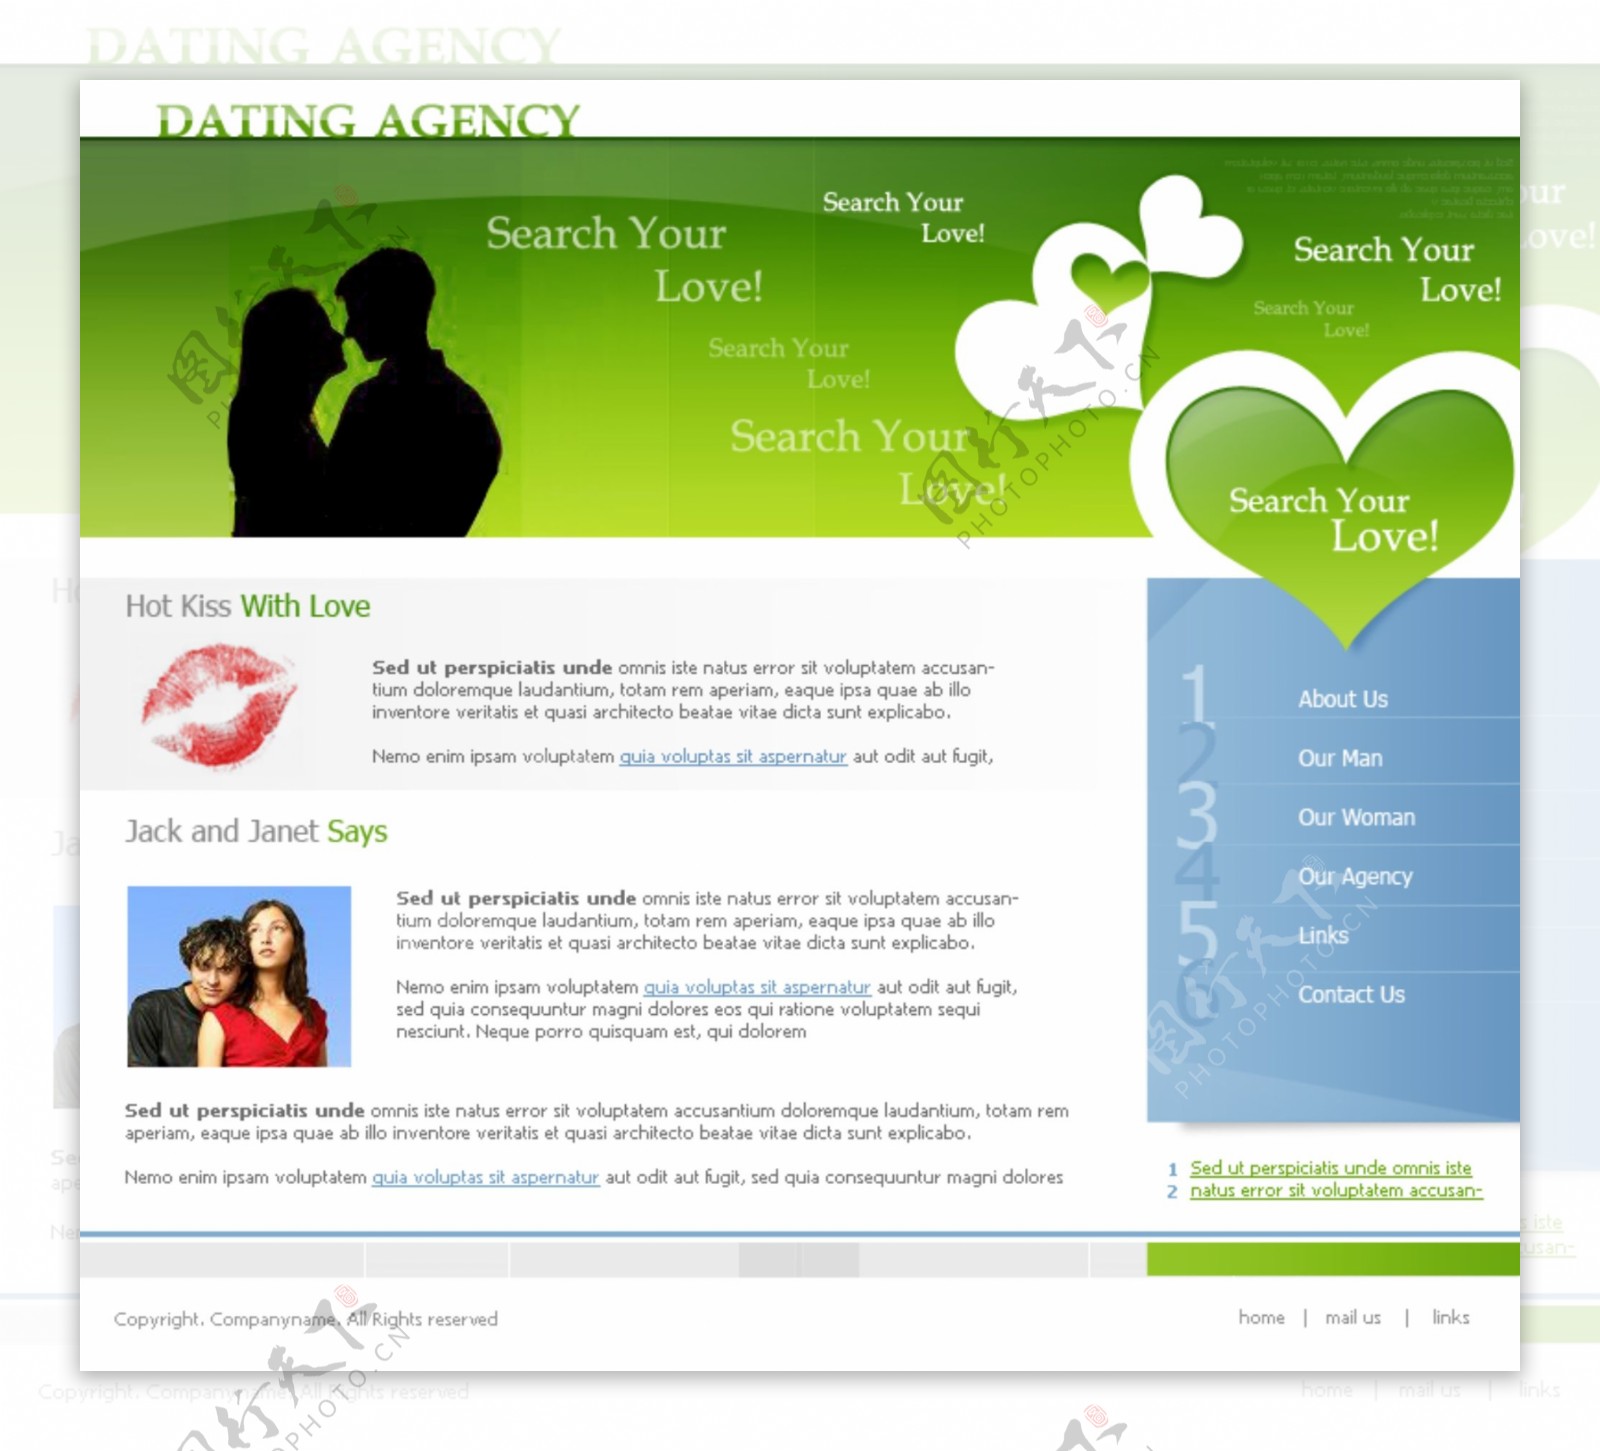 绿色婚介中心网页模板